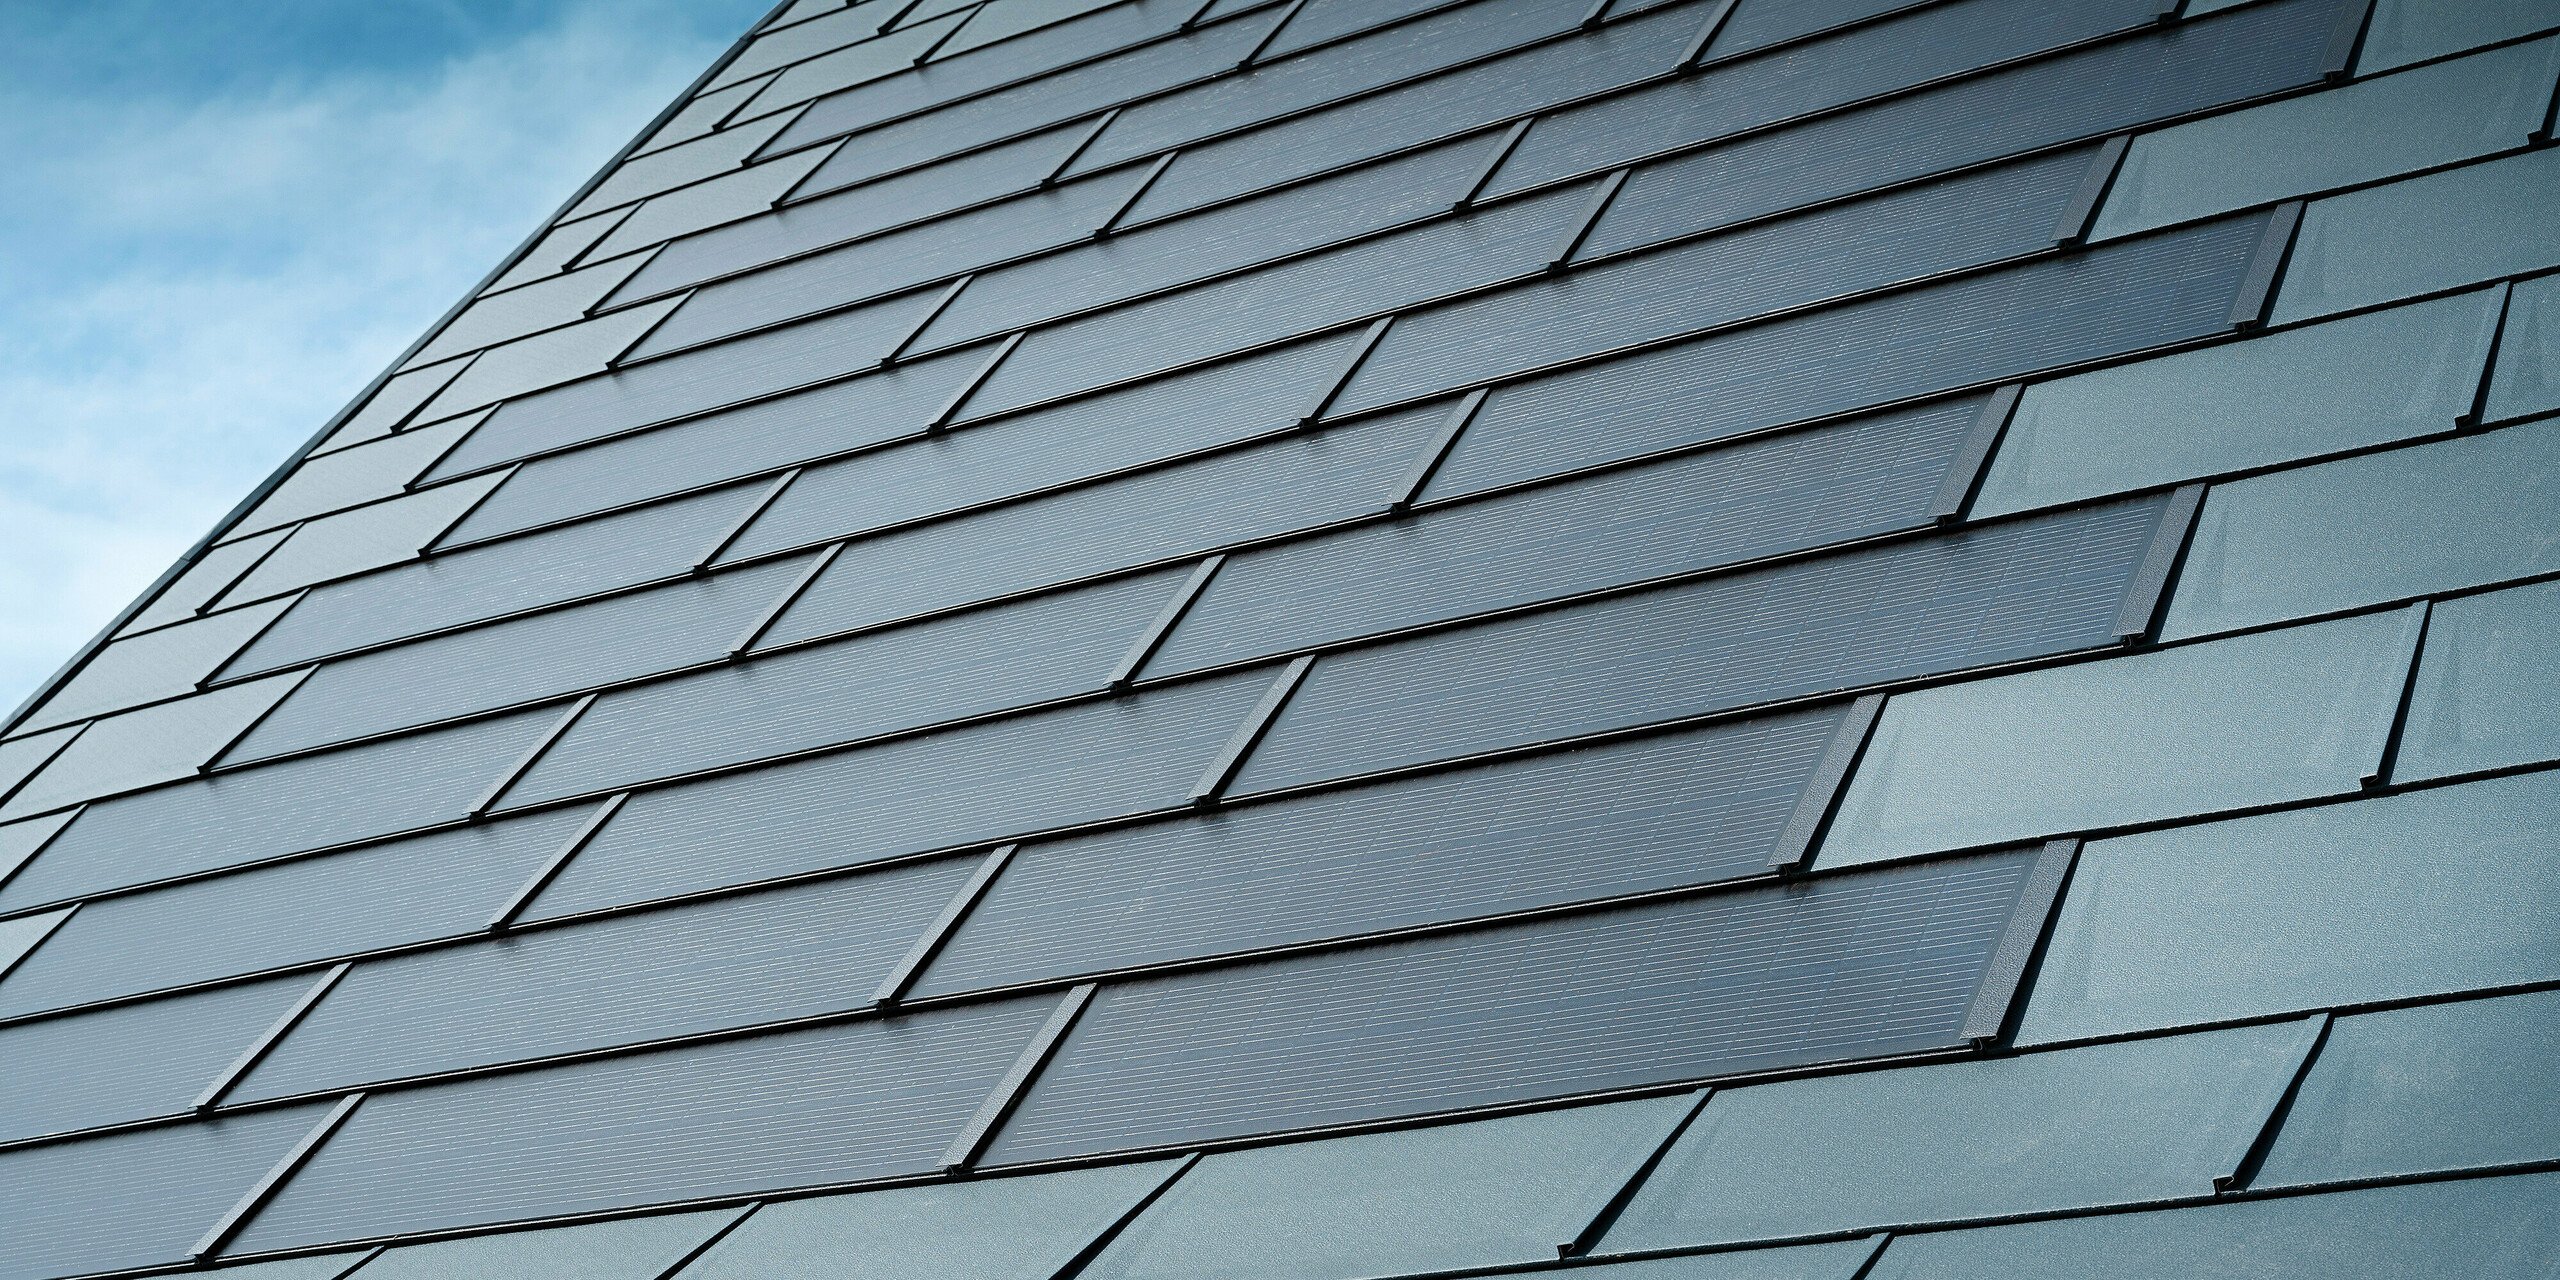 Detailansicht des sanierten Dachs eines Einfamilienhauses in Leonding mit PREFA Solardachplatten in Anthrazit. Die Nahaufnahme zeigt die hochwertigen Blechplatten von PREFA, die eine nahtlose Integration der Solarmodule ermöglichen. Diese langlebige und witterungsbeständige Lösung bietet eine nachhaltige und energieeffiziente Möglichkeit zur Stromerzeugung. Das Bild verdeutlicht die ästhetische und funktionale Qualität der verwendeten Aluminiumbleche. Rund um die innovativen Solardachplatten wurden klassische Dachplatten R.16 in der gleichen Farbe verlegt.